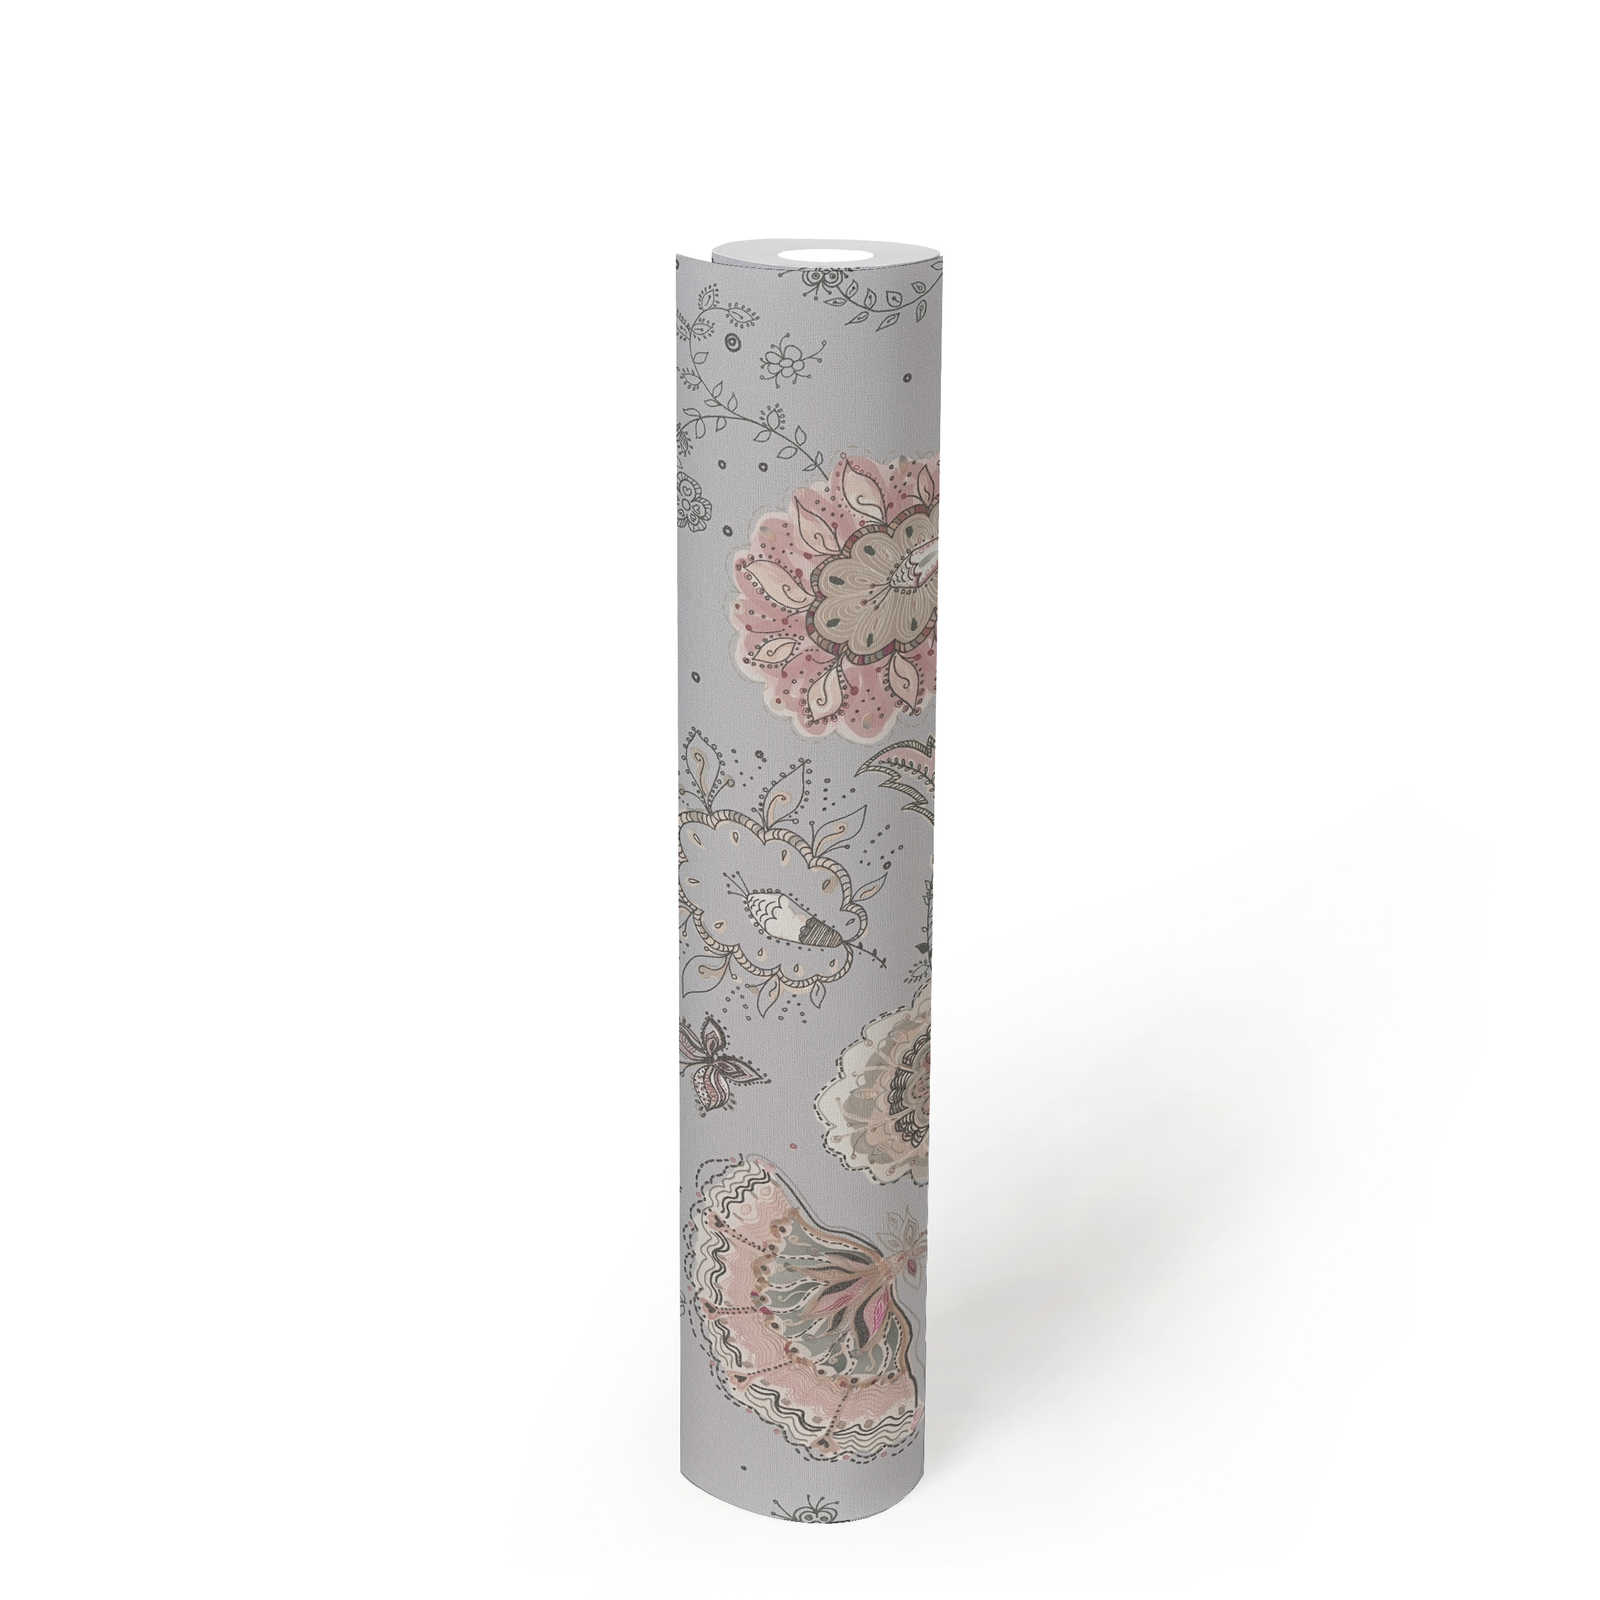             Papel pintado no tejido con motivo floral abstracto de estructura fina - gris, beige, crema
        